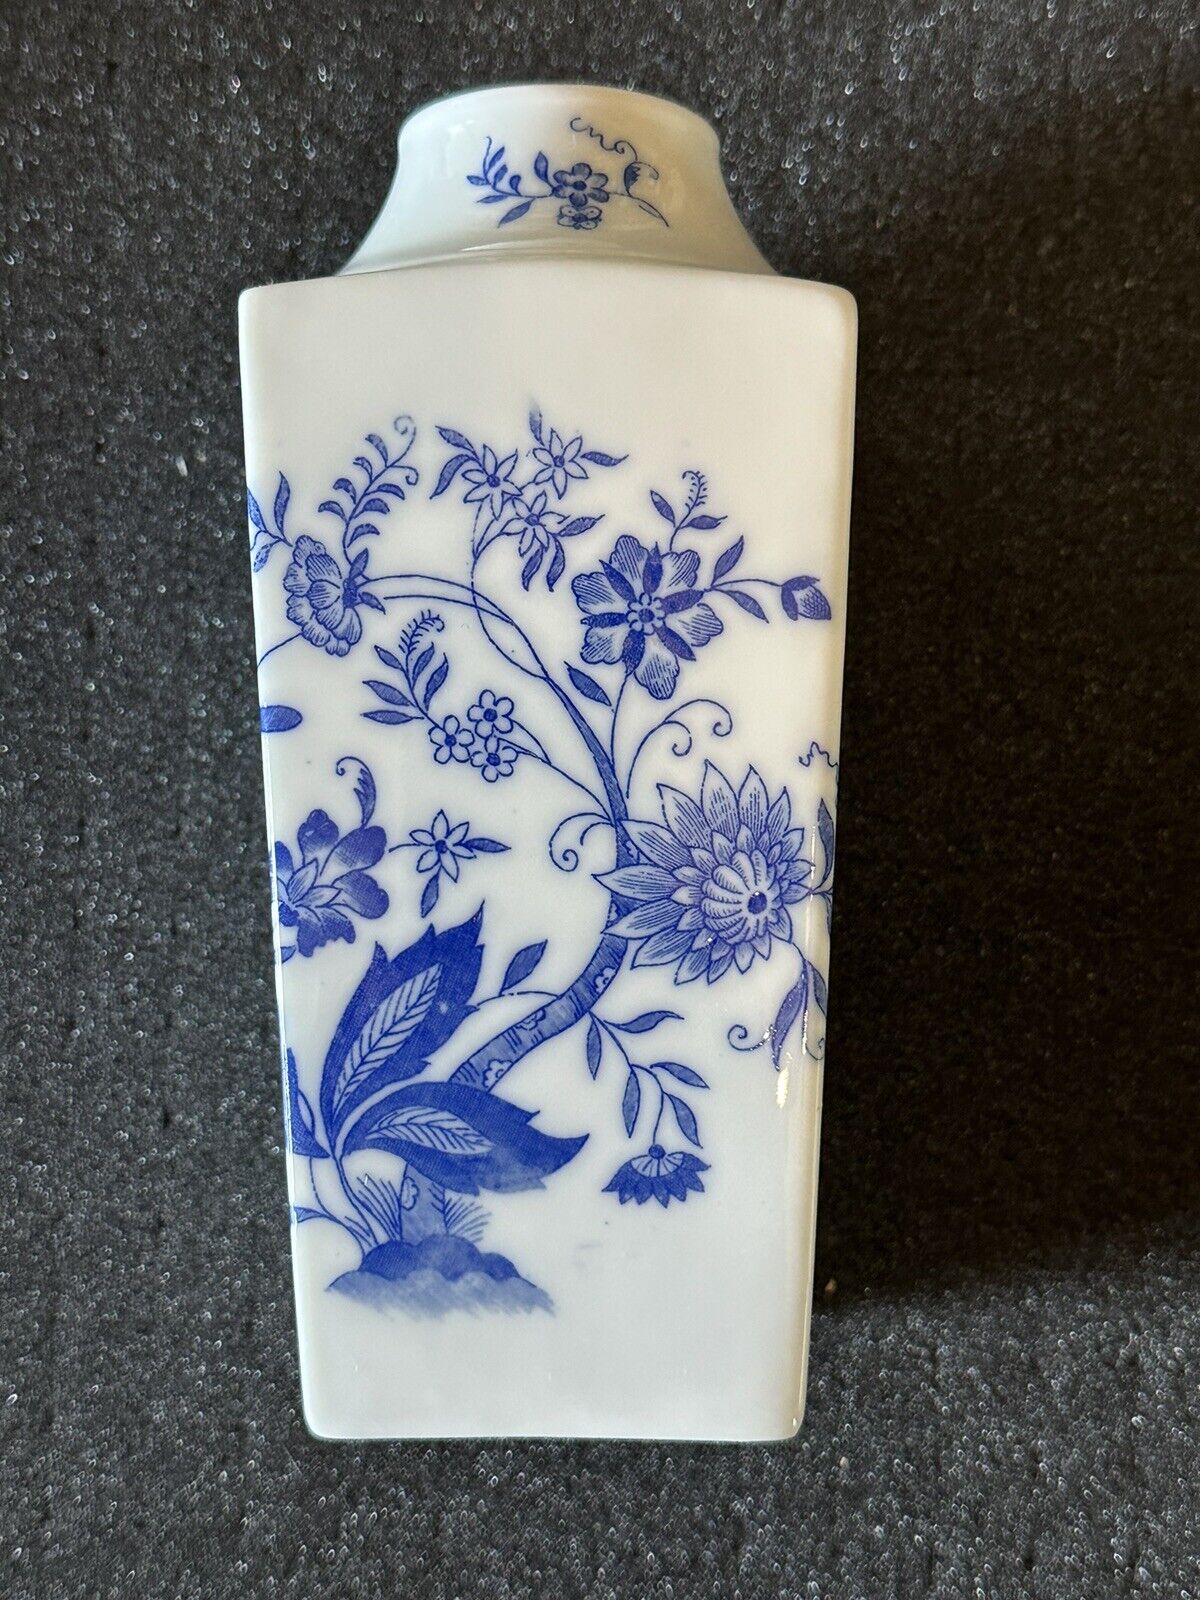 Elizabeth Arden Urn/Vase White with Blue Floral Design -made In Japan.